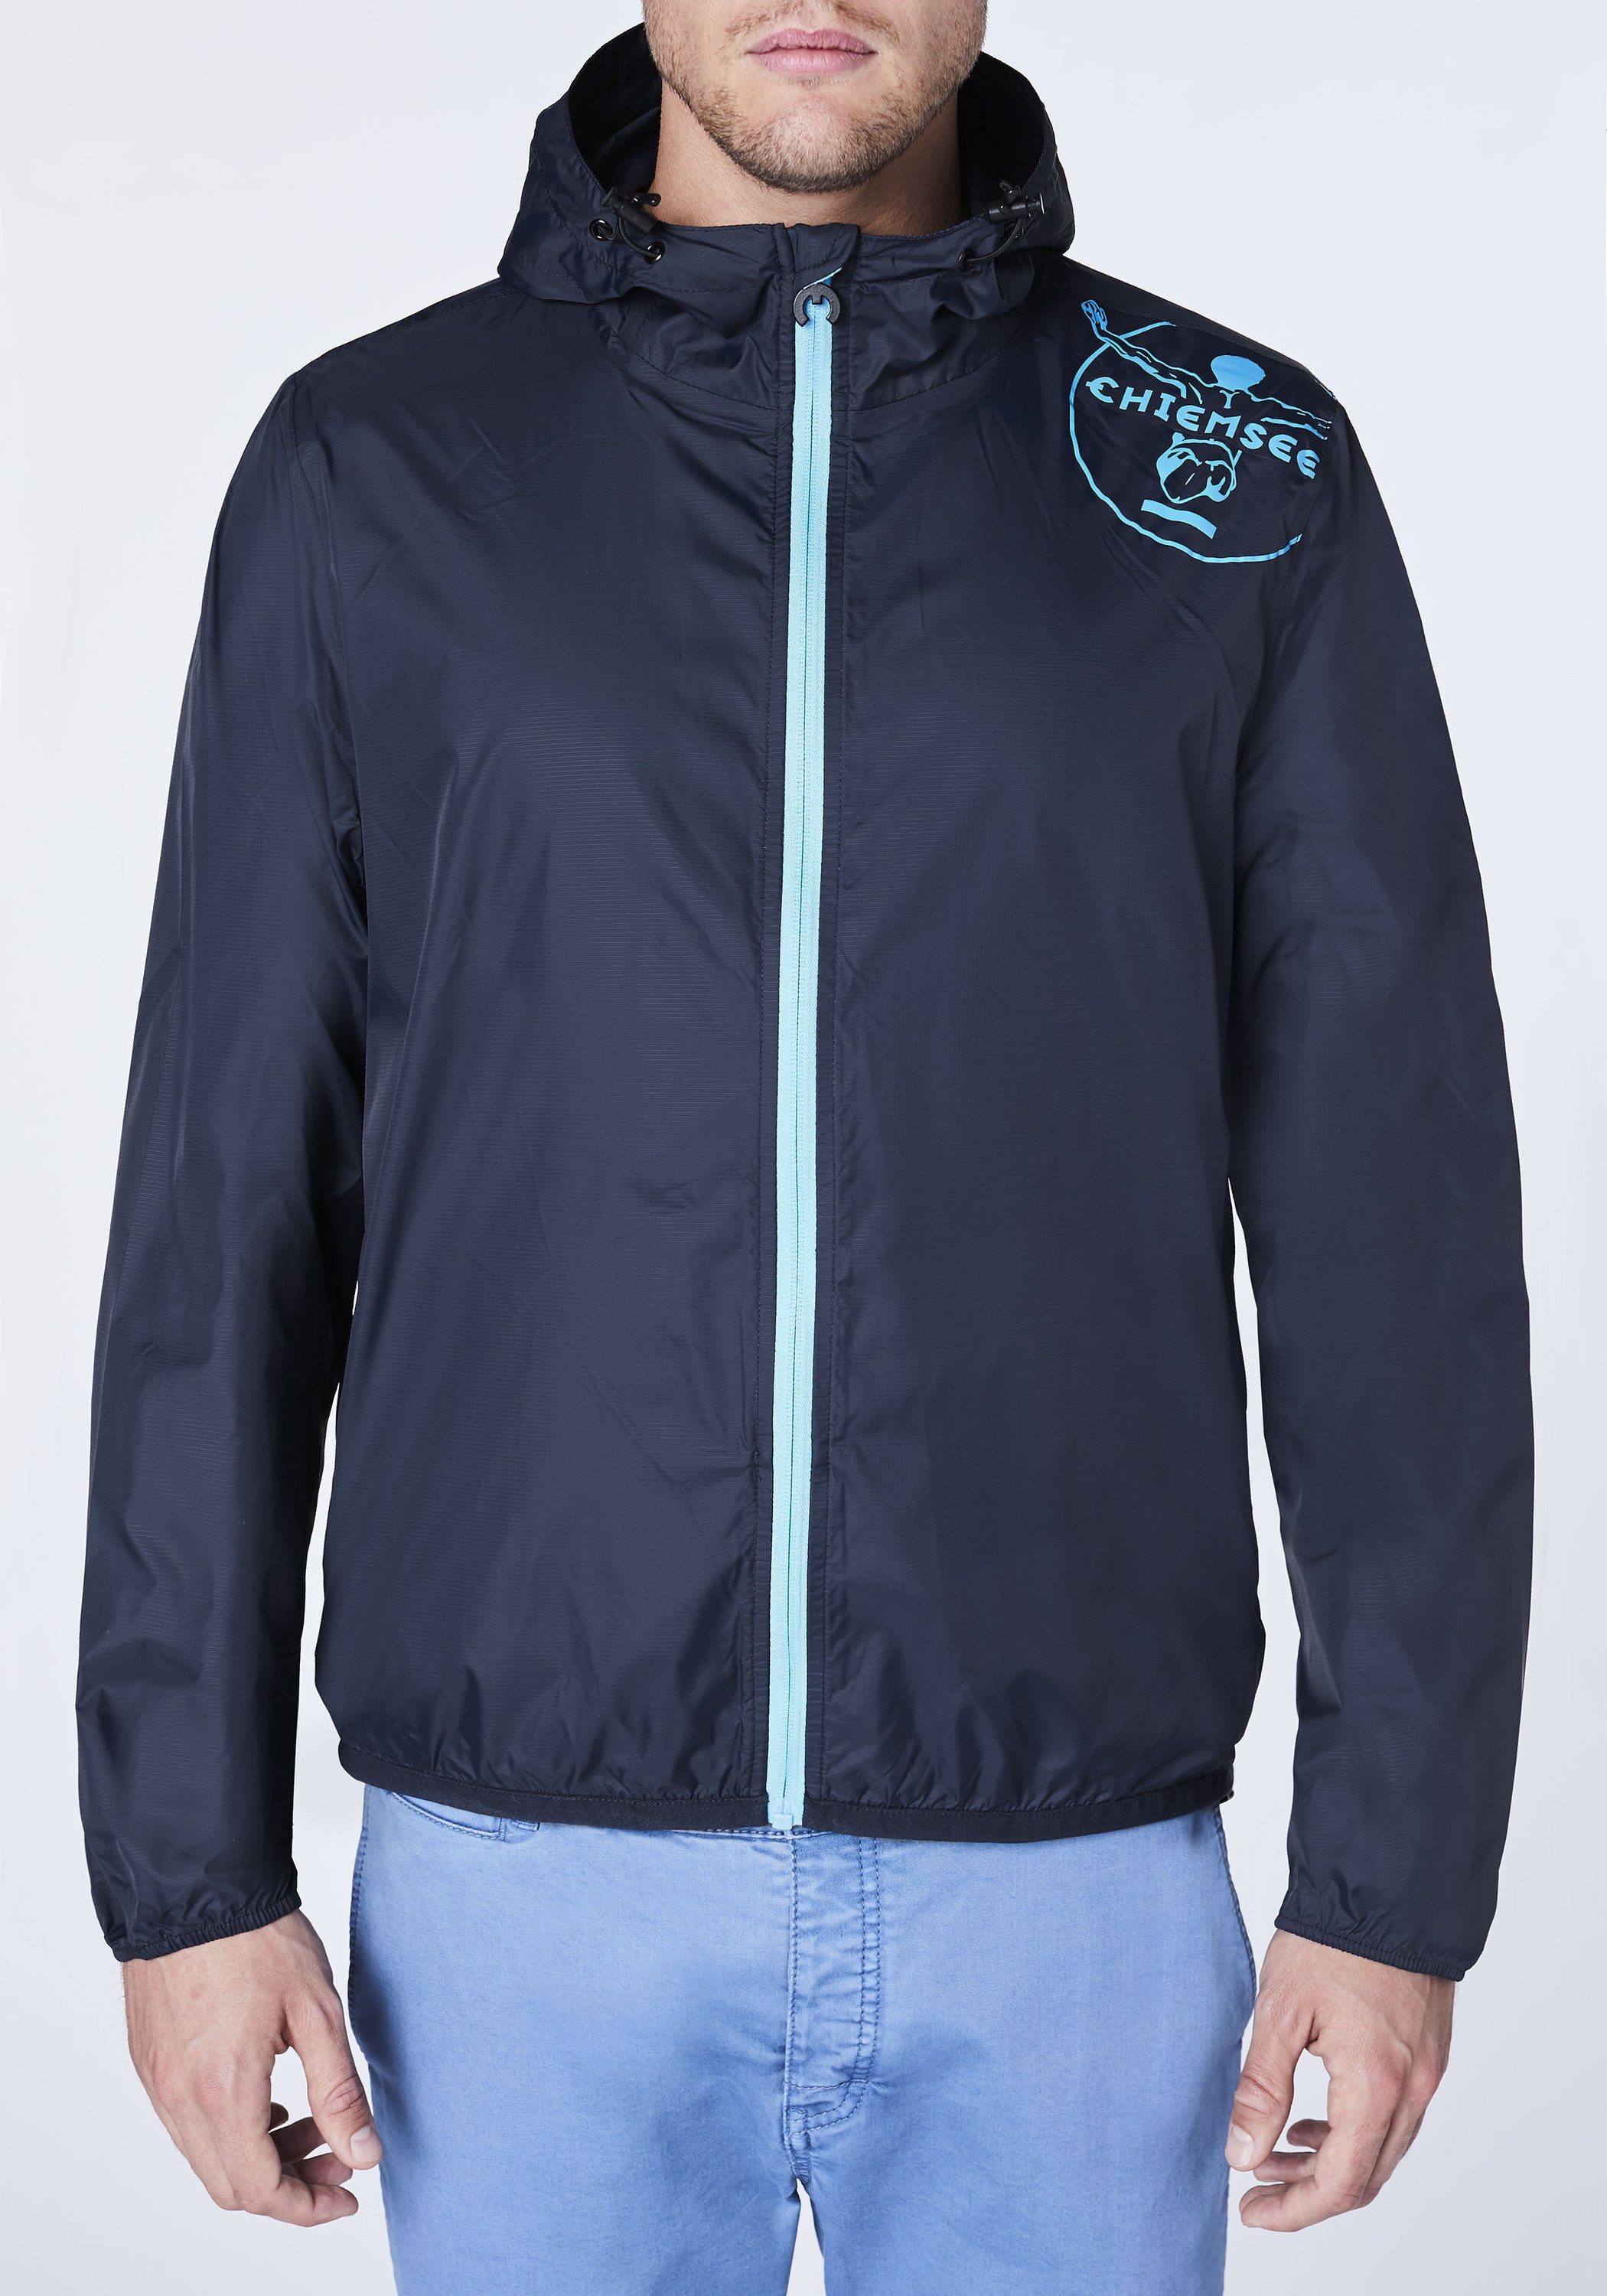 1 Regenjacke und blau Jumper-Motiv Outdoorjacke Taschen-Funktion Chiemsee dunkel mit